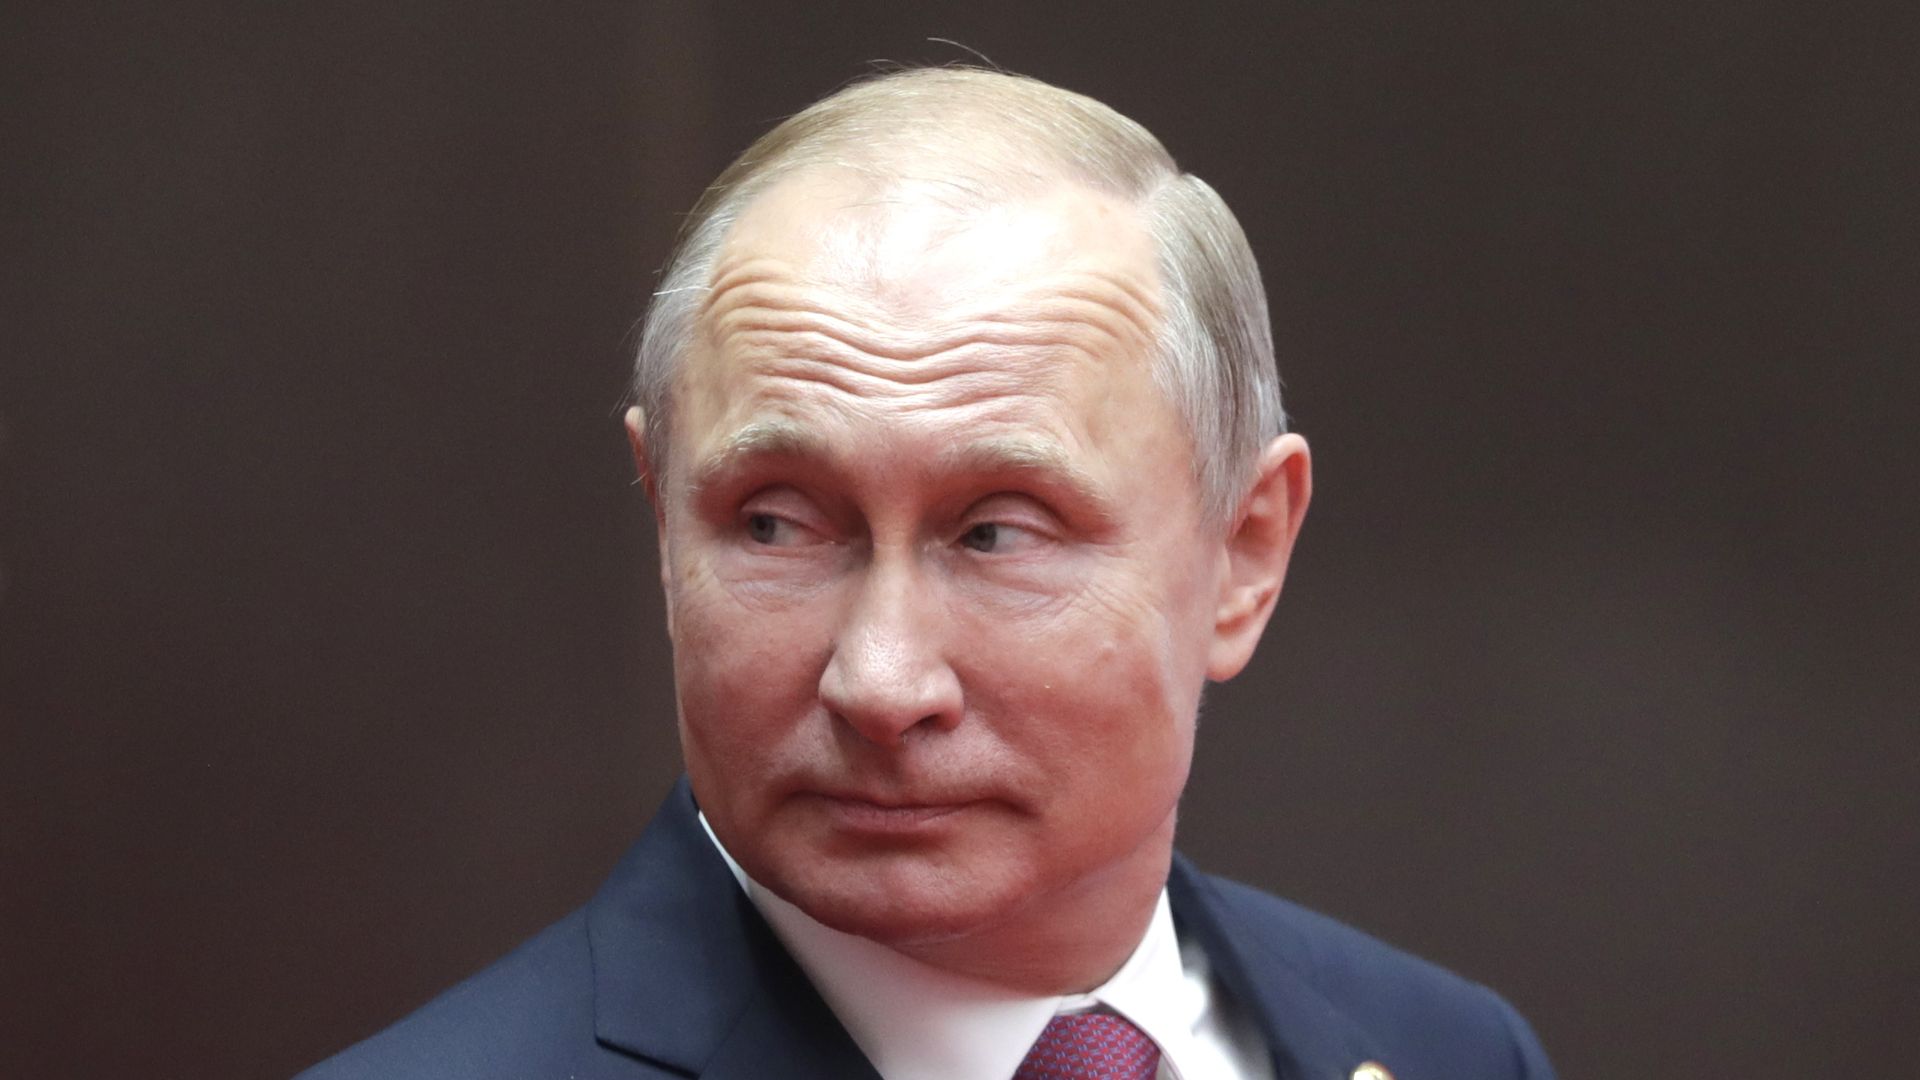 Vladimir Putin in a navy suit looks sideways before a dark background.